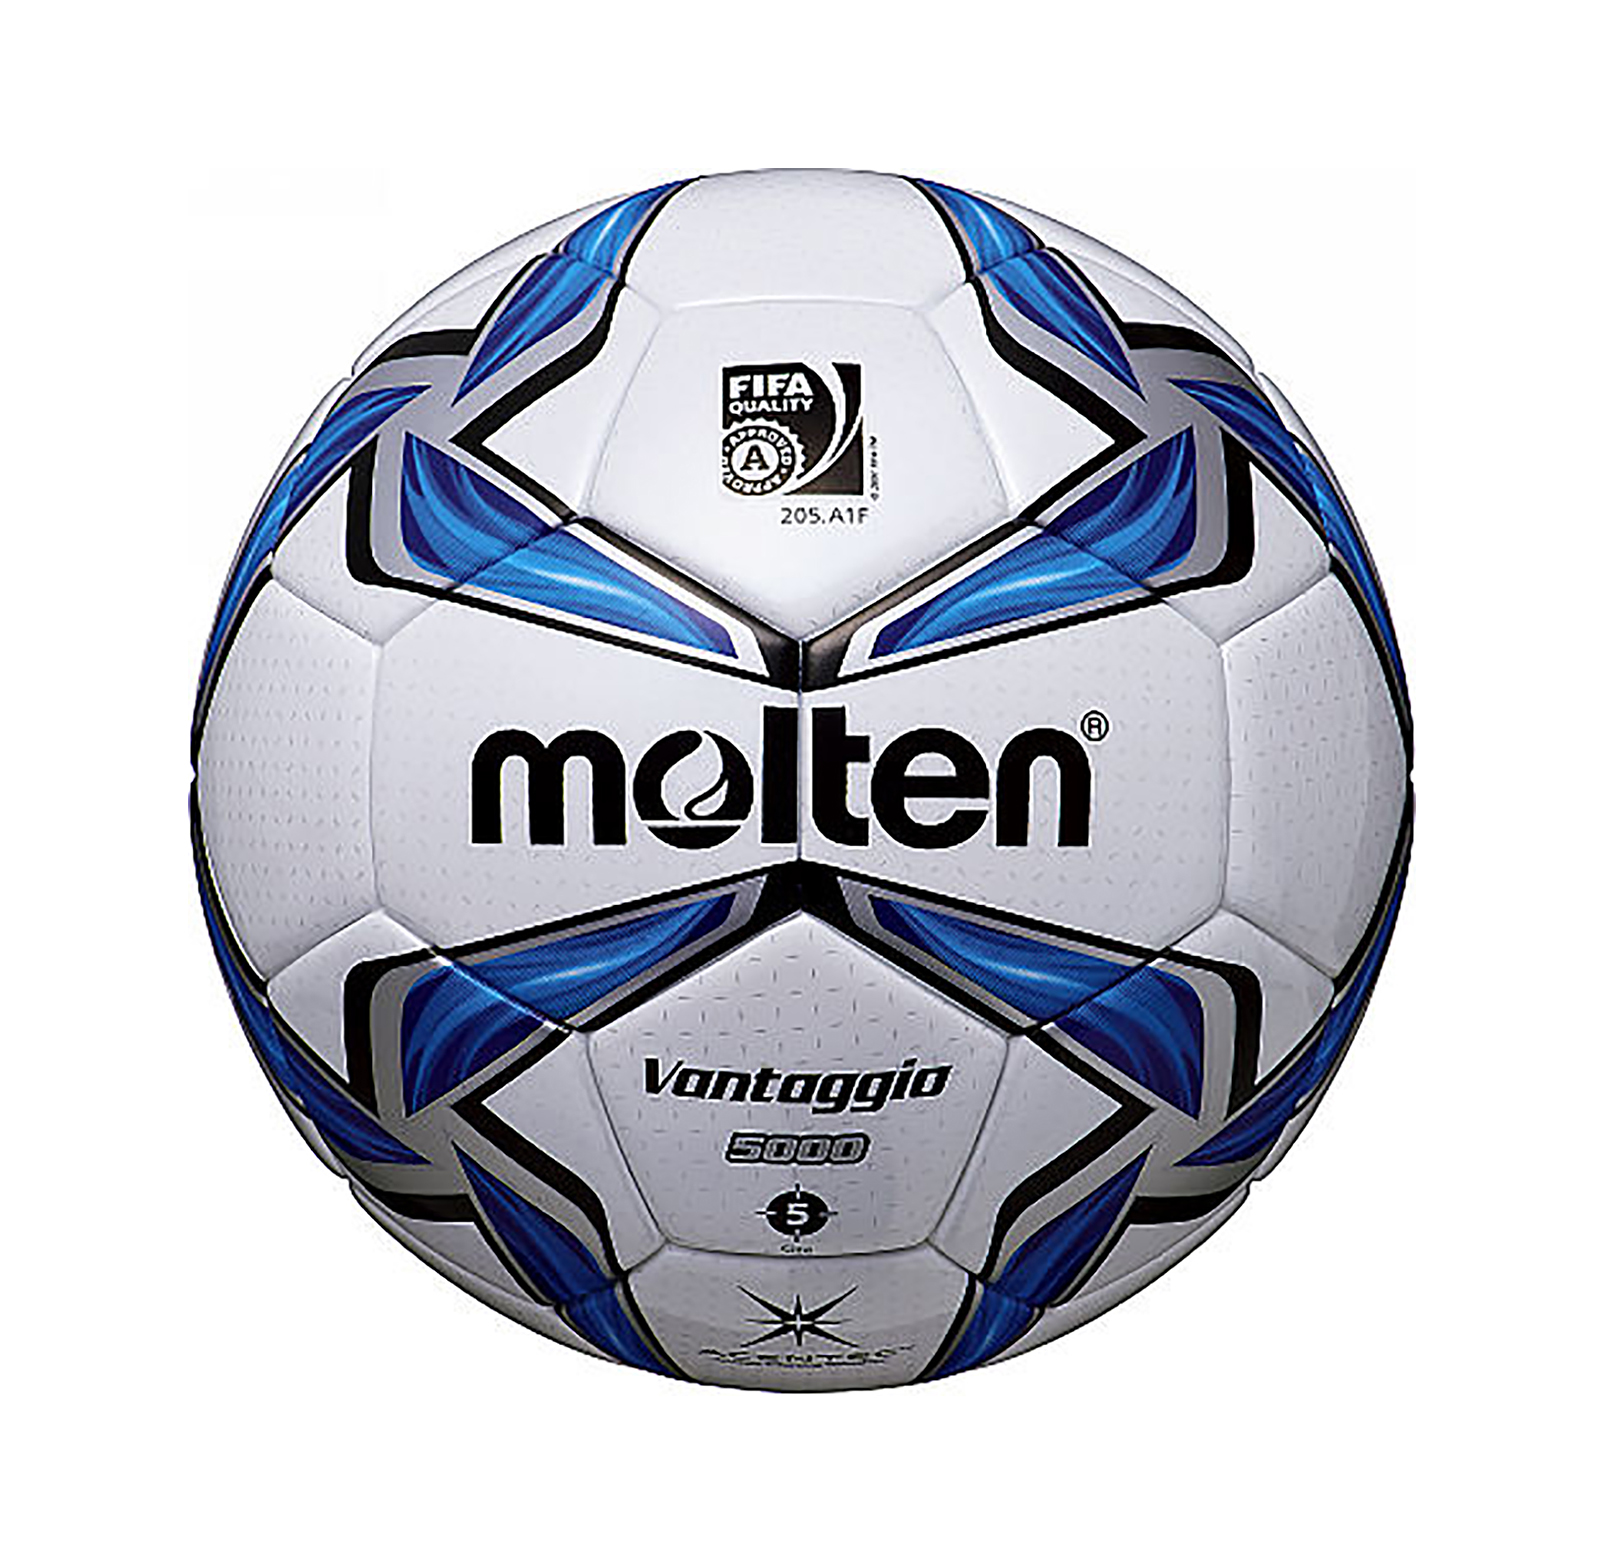 Balón Fútbol # 5 Profesional Power Termotech